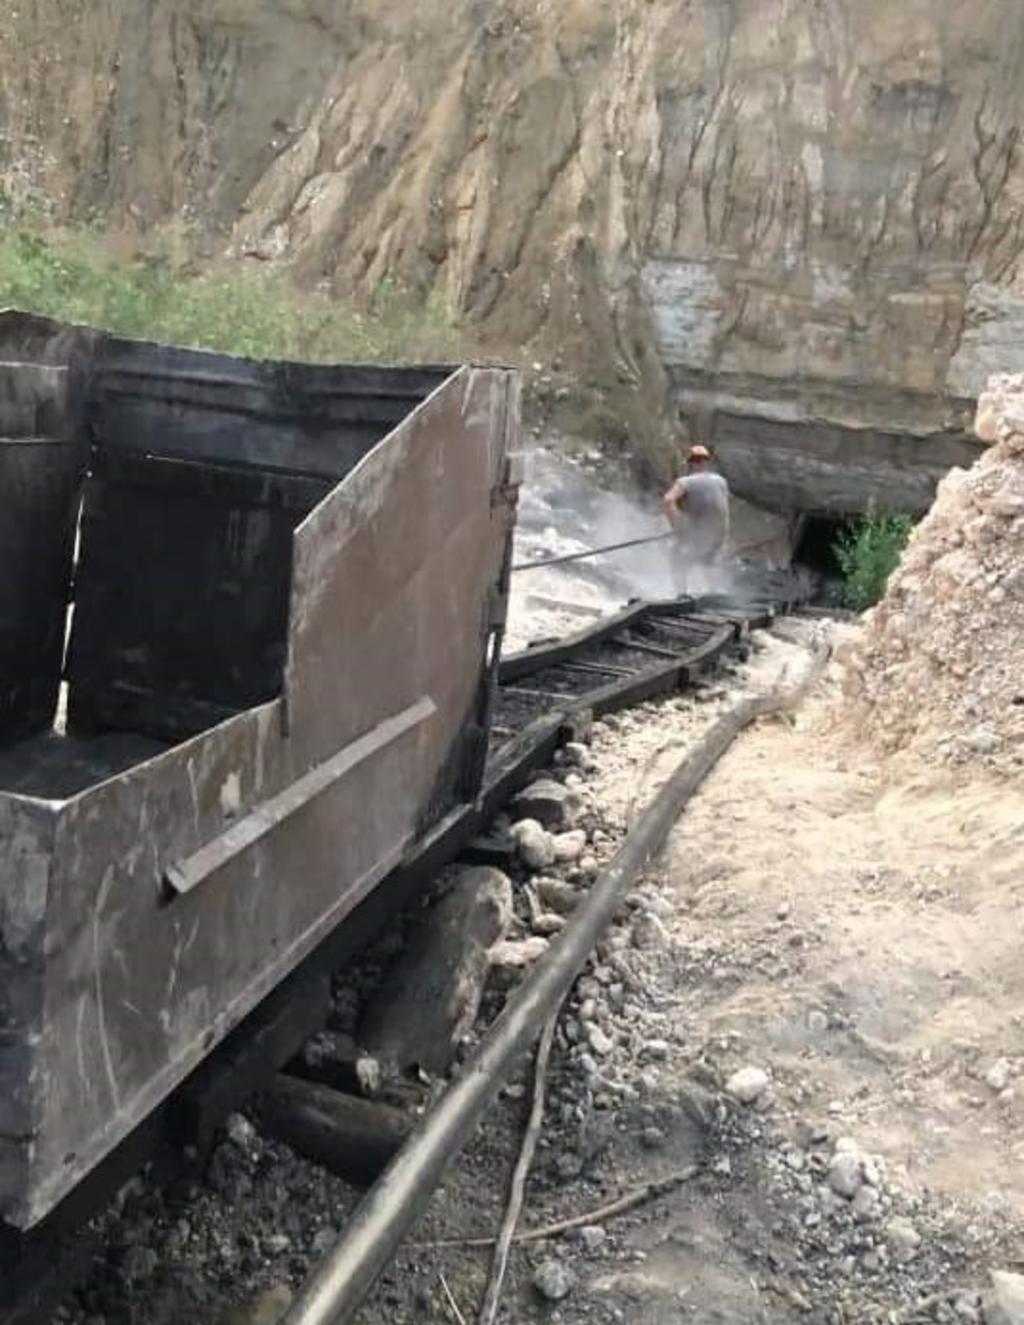 El minero atrapado bajo tierra responde al nombre de Juan Manuel Galván Robledo, tiene aproximadamente 35 años de edad, y sus compañeros esperan que sea rescatado con vida. (EL SIGLO COAHUILA)
